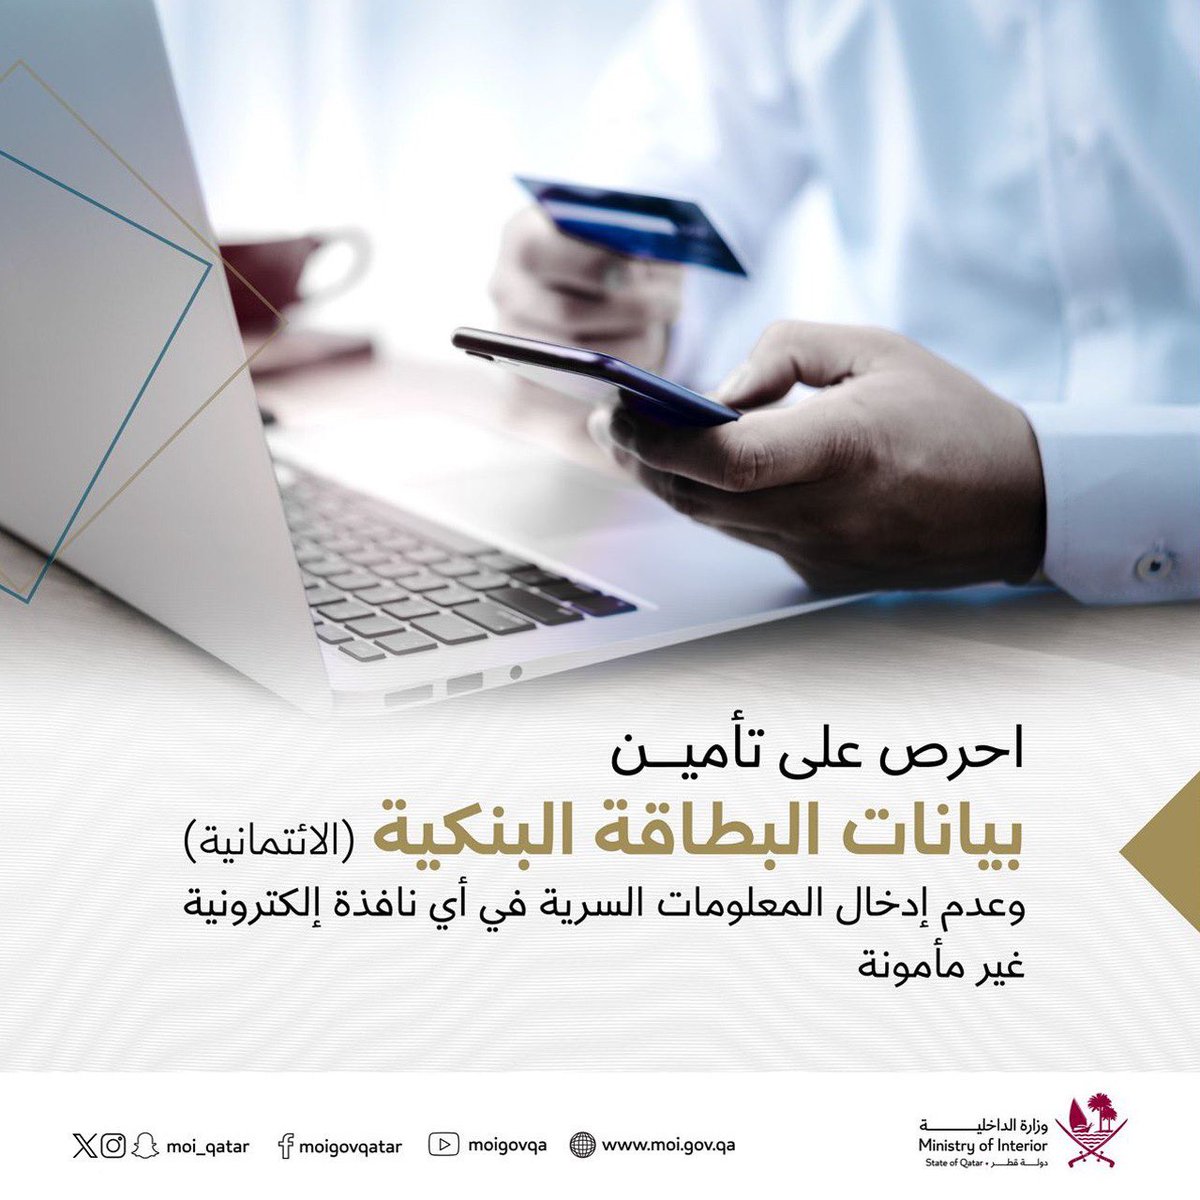 تتطلب السلامة من الجرائم الإلكترونية، الحرص على تأمين بيانات البطاقة البنكية (الائتمانية) وعدم إدخال المعلومات السرية في أي نافذة إلكترونية غير مأمونة.. بوعيك تحقق أمنك #الداخلية_قطر